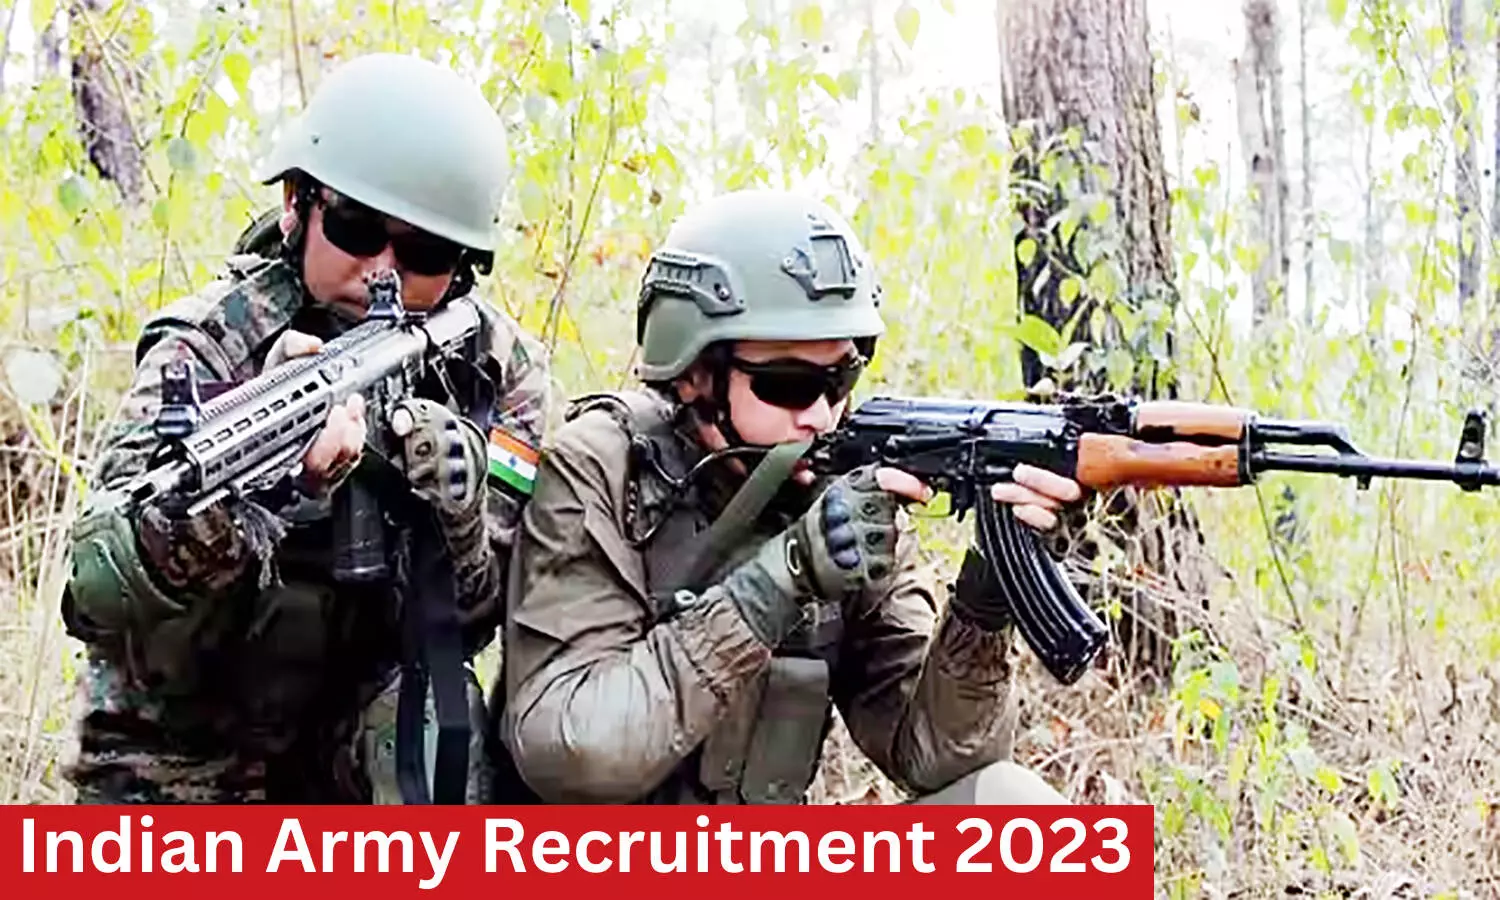 Indian Army Recruitment 2023: भारतीय सेना में निकली वैकेंसी, यह होनी चाहिए क्वालिफिकेशन व एज लिमिट